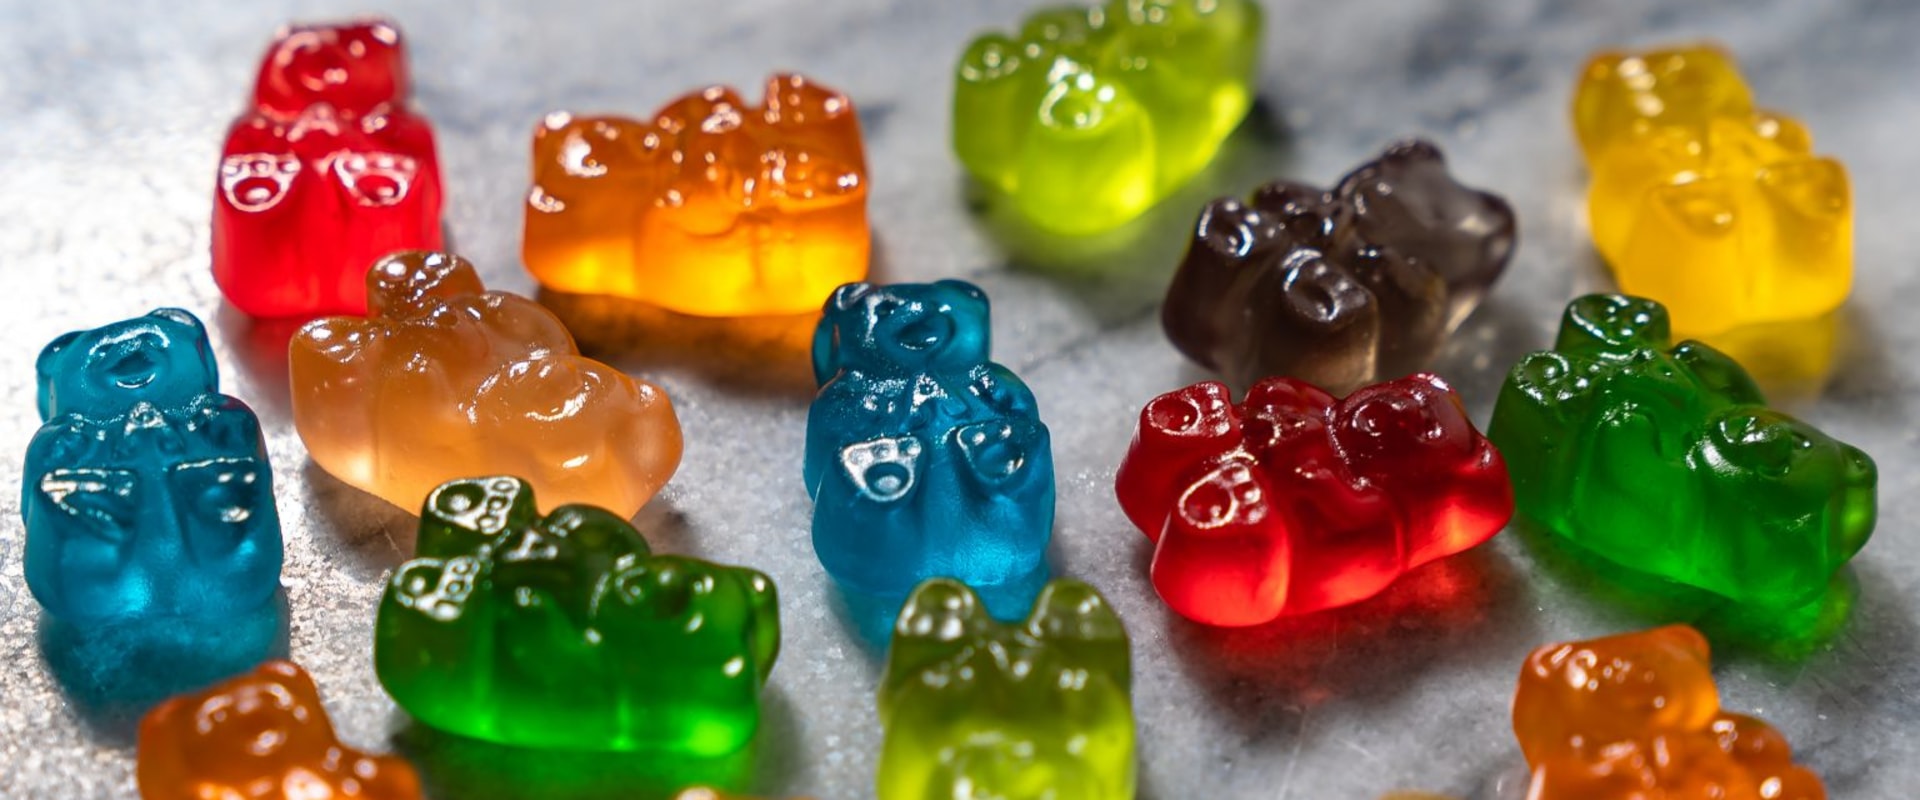 What Benefits Can Hemp Gummies Offer?